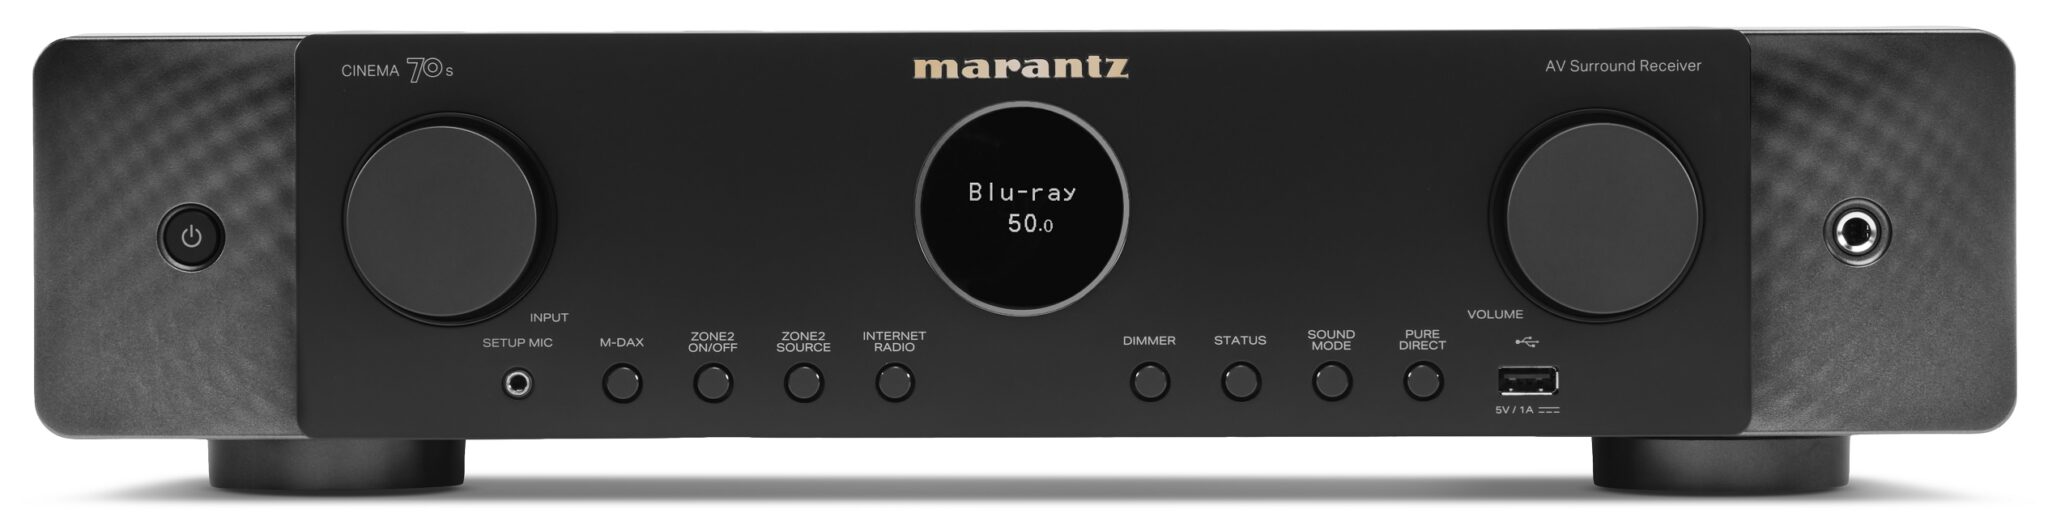 Marantz CINEMA 70s zwart - AV Receiver